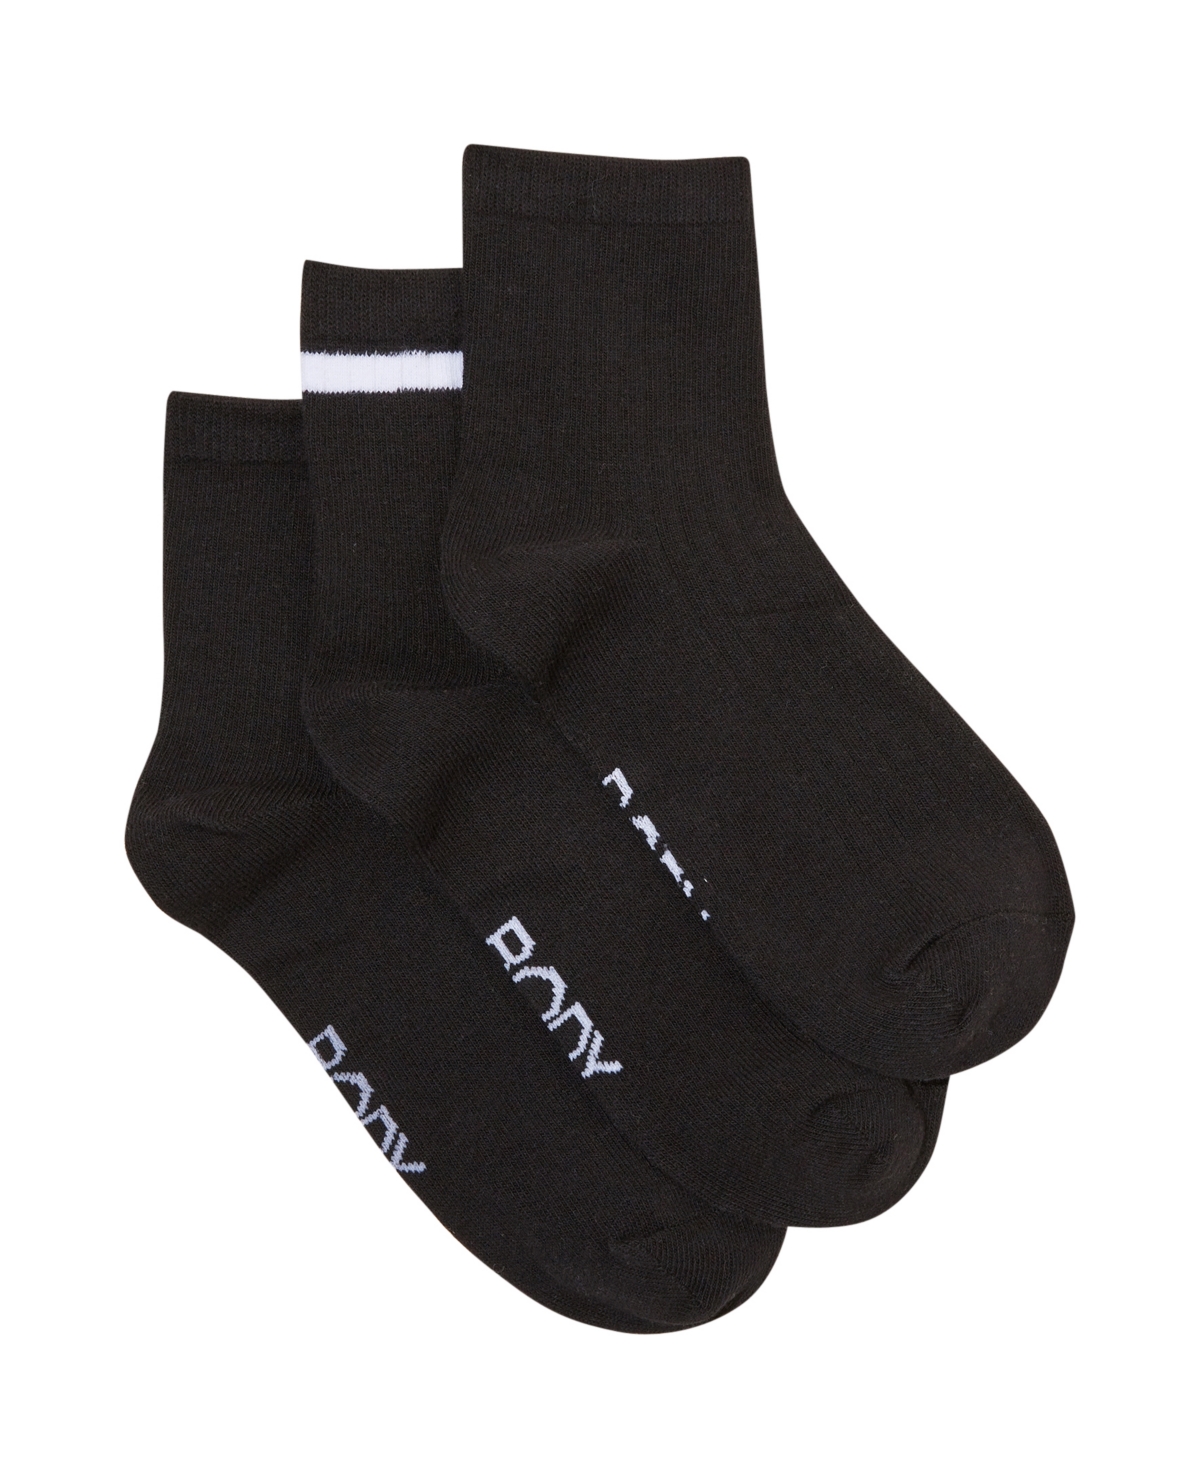 Cotton On Body Midi Crew Socks, Pack Of 3 In Black